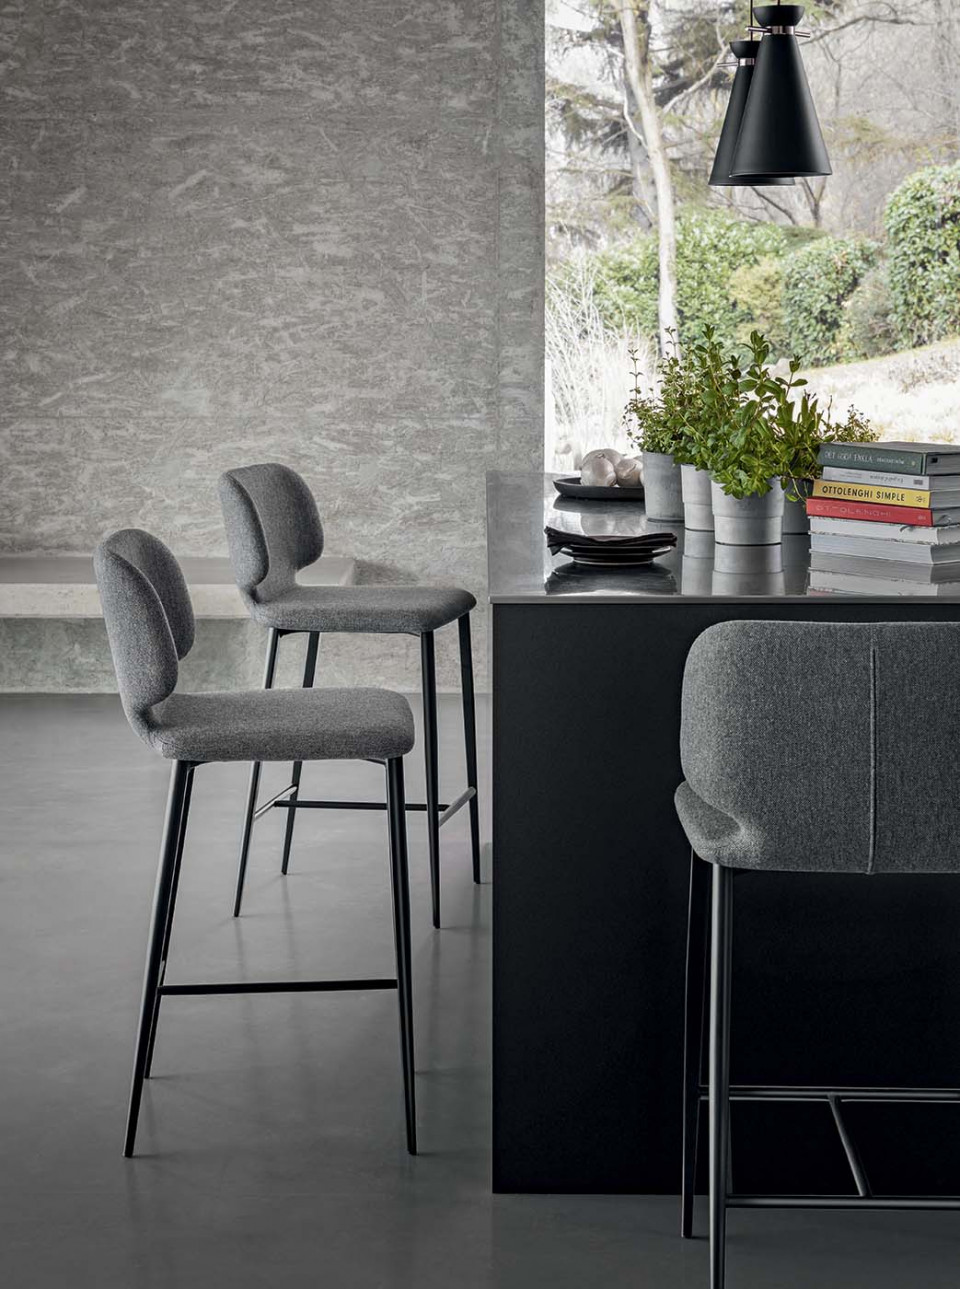 Wrap stool in grey fabric